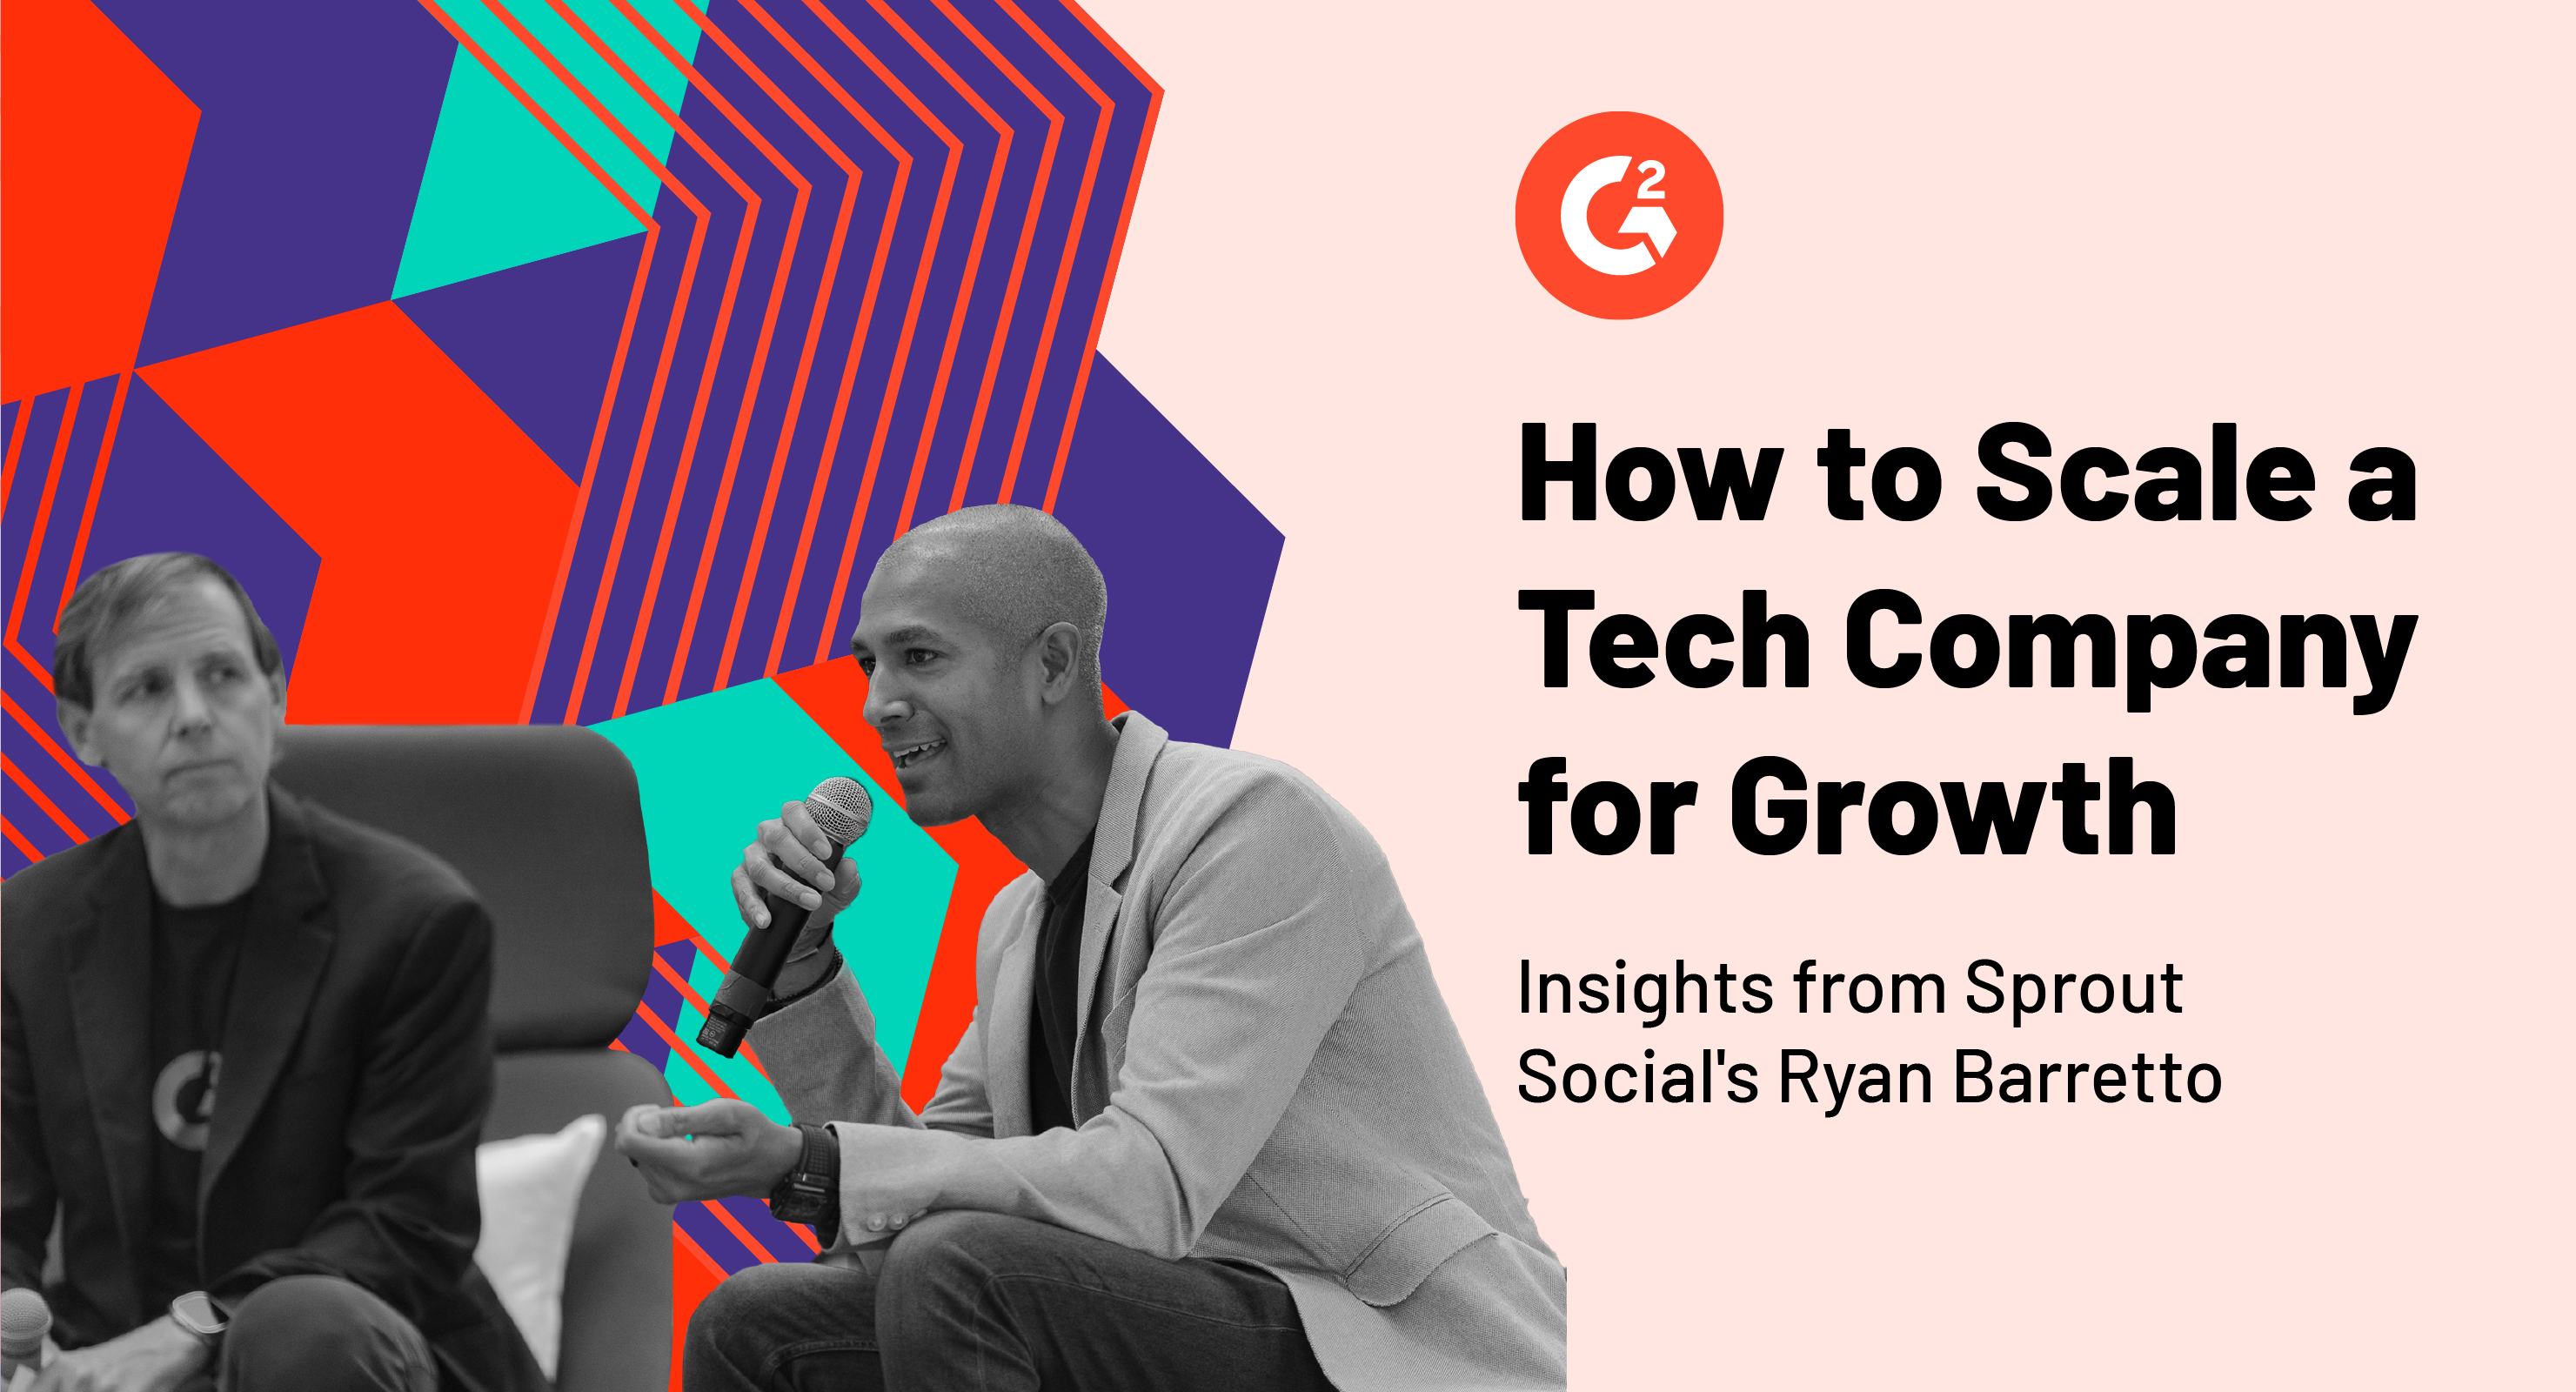 Sprout Social 的 Ryan Barretto 谈如何扩大科技公司的规模以实现高增长